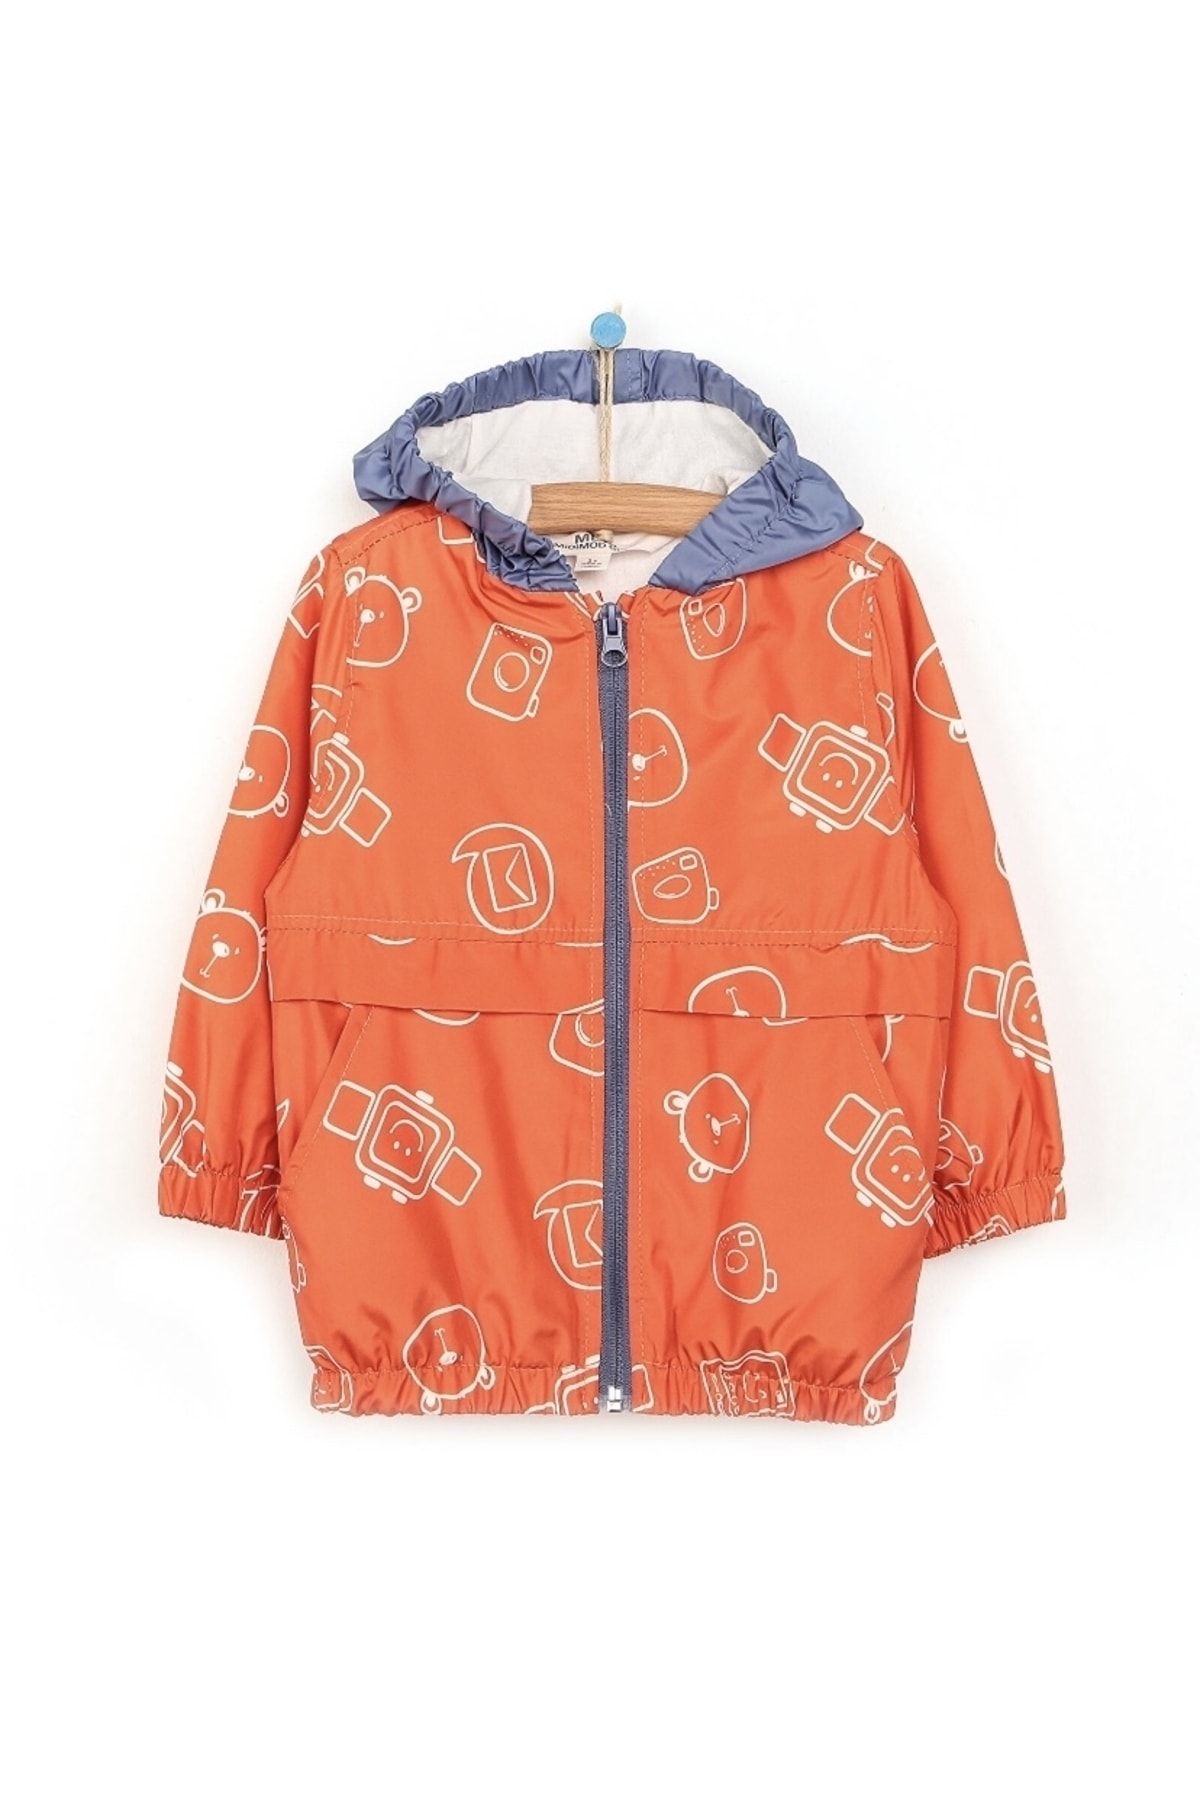 Midimod Basic erkek bebek turuncu desenli kapüşonlu yağmurluk